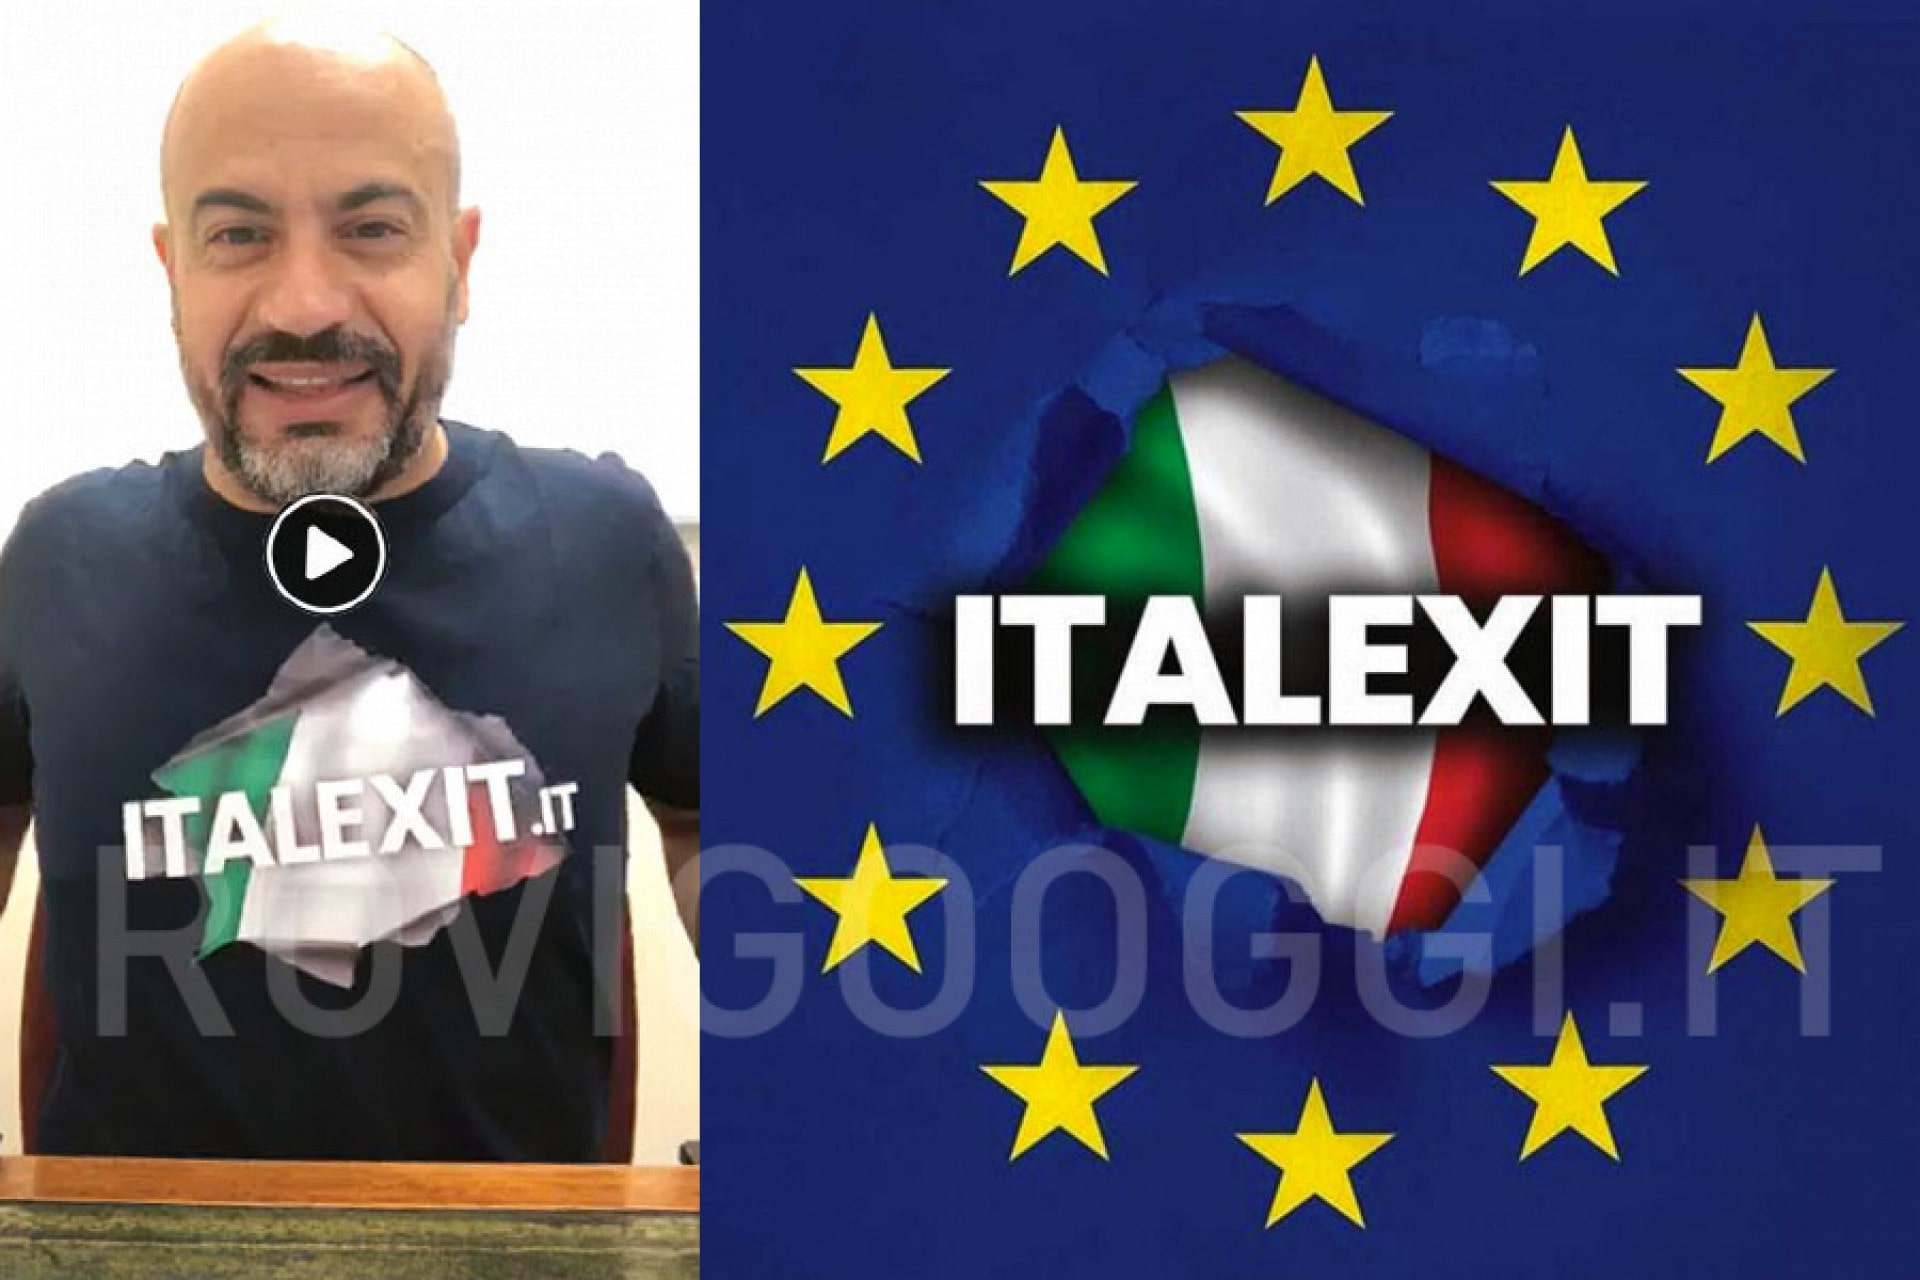 Italijanski senator ustanavlja gibanje za izstop Italije iz Evropske unije